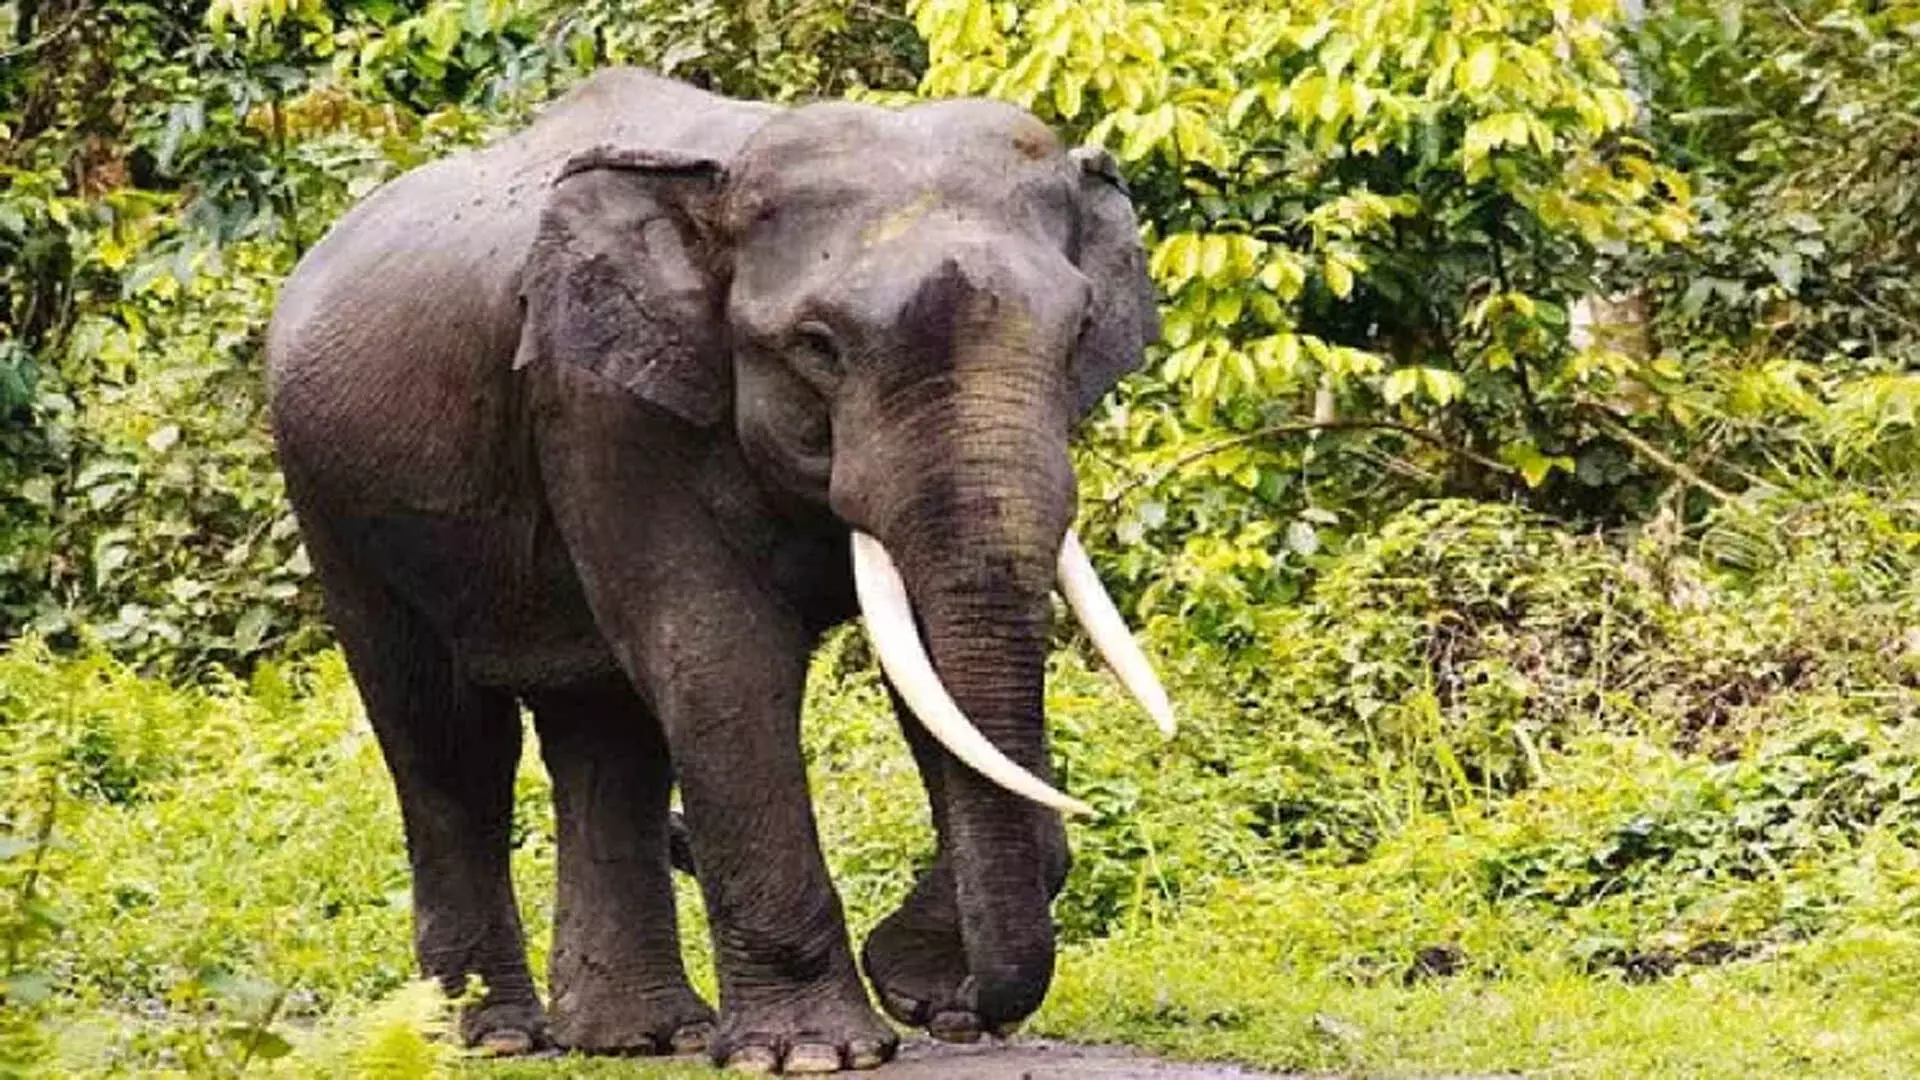 Chennai: आदिवासी स्कूल के बाहर दो जंगली हाथियों को डेरा डालते देखा गया